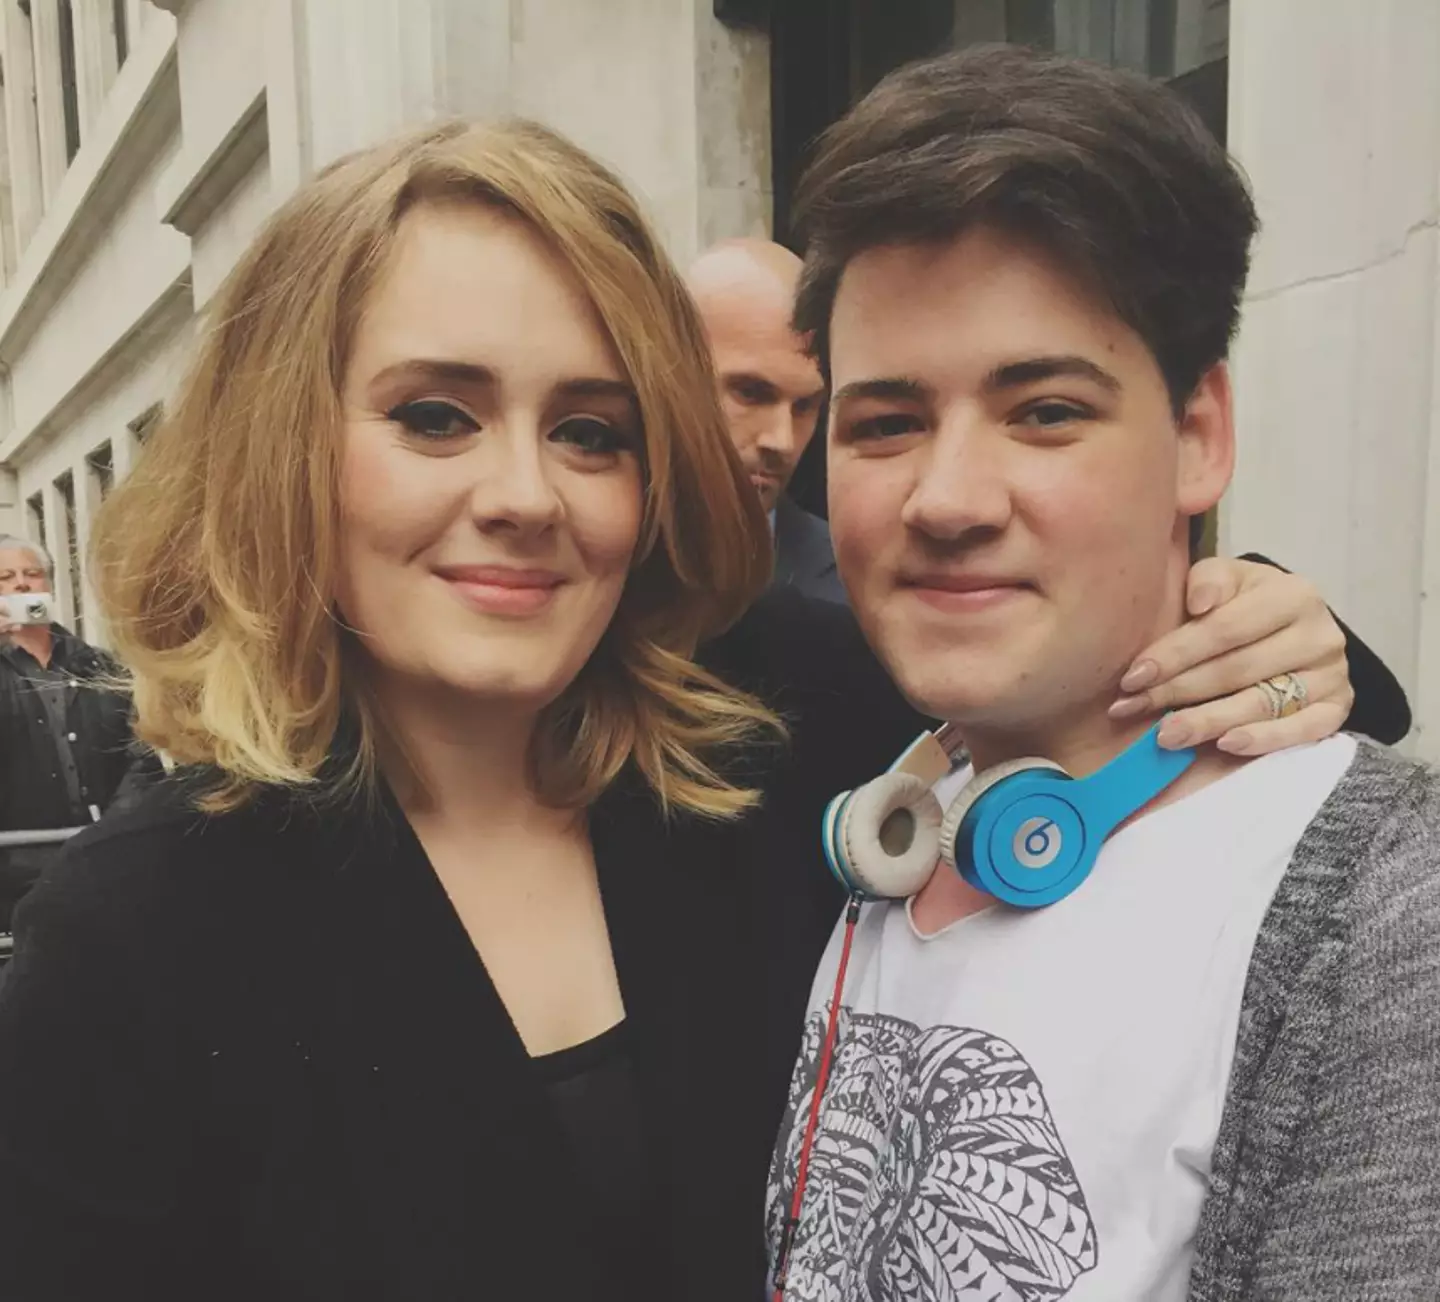 Harvey described Adele as a 'queen'.